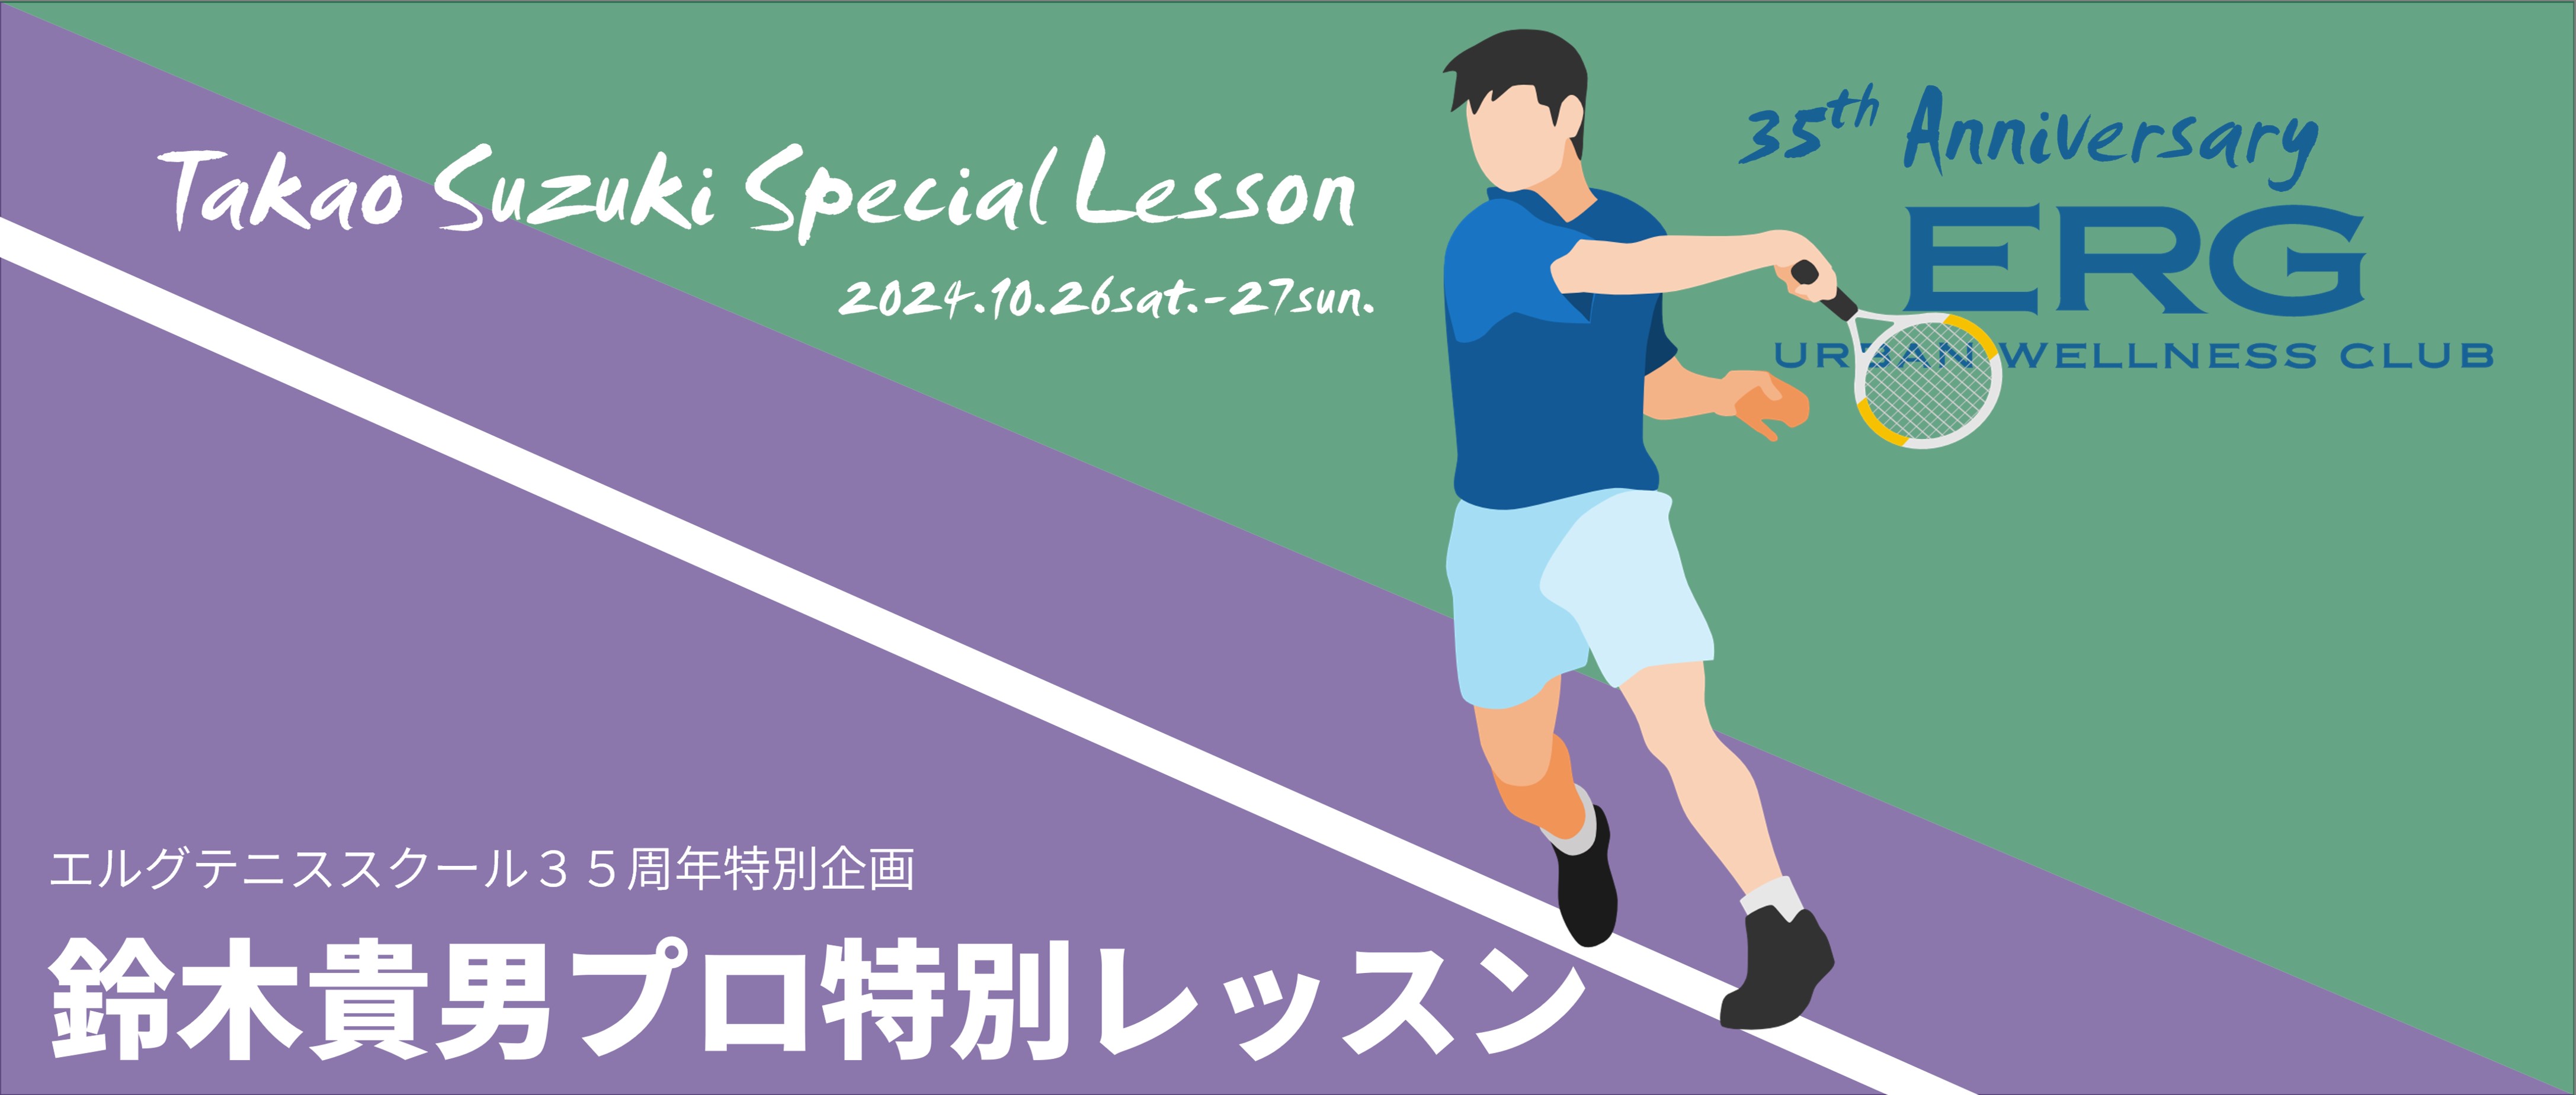 エルグテニススクール35周年特別企画 鈴木貴男プロ特別レッスン